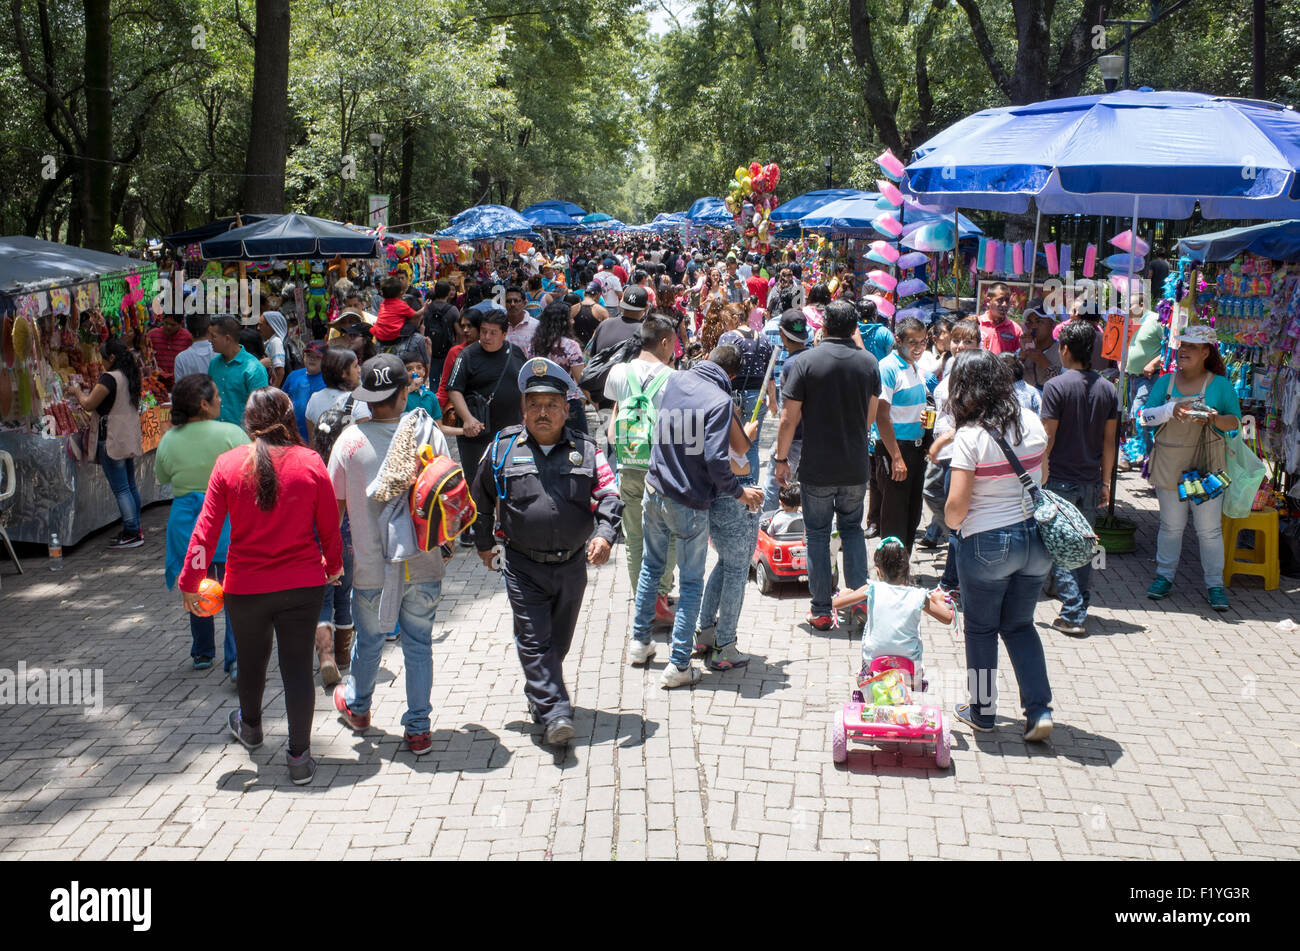 CITTÀ DEL MESSICO, Messico — il Parco Chapultepec, spesso definito come i "polmoni di Città del Messico", offre una boccata d'aria fresca in mezzo alla vivace metropoli. Essendo uno dei più grandi parchi cittadini dell'emisfero occidentale, è un importante sito ecologico, culturale e storico che funge da centro ricreativo sia per la gente del posto che per i turisti. Foto Stock